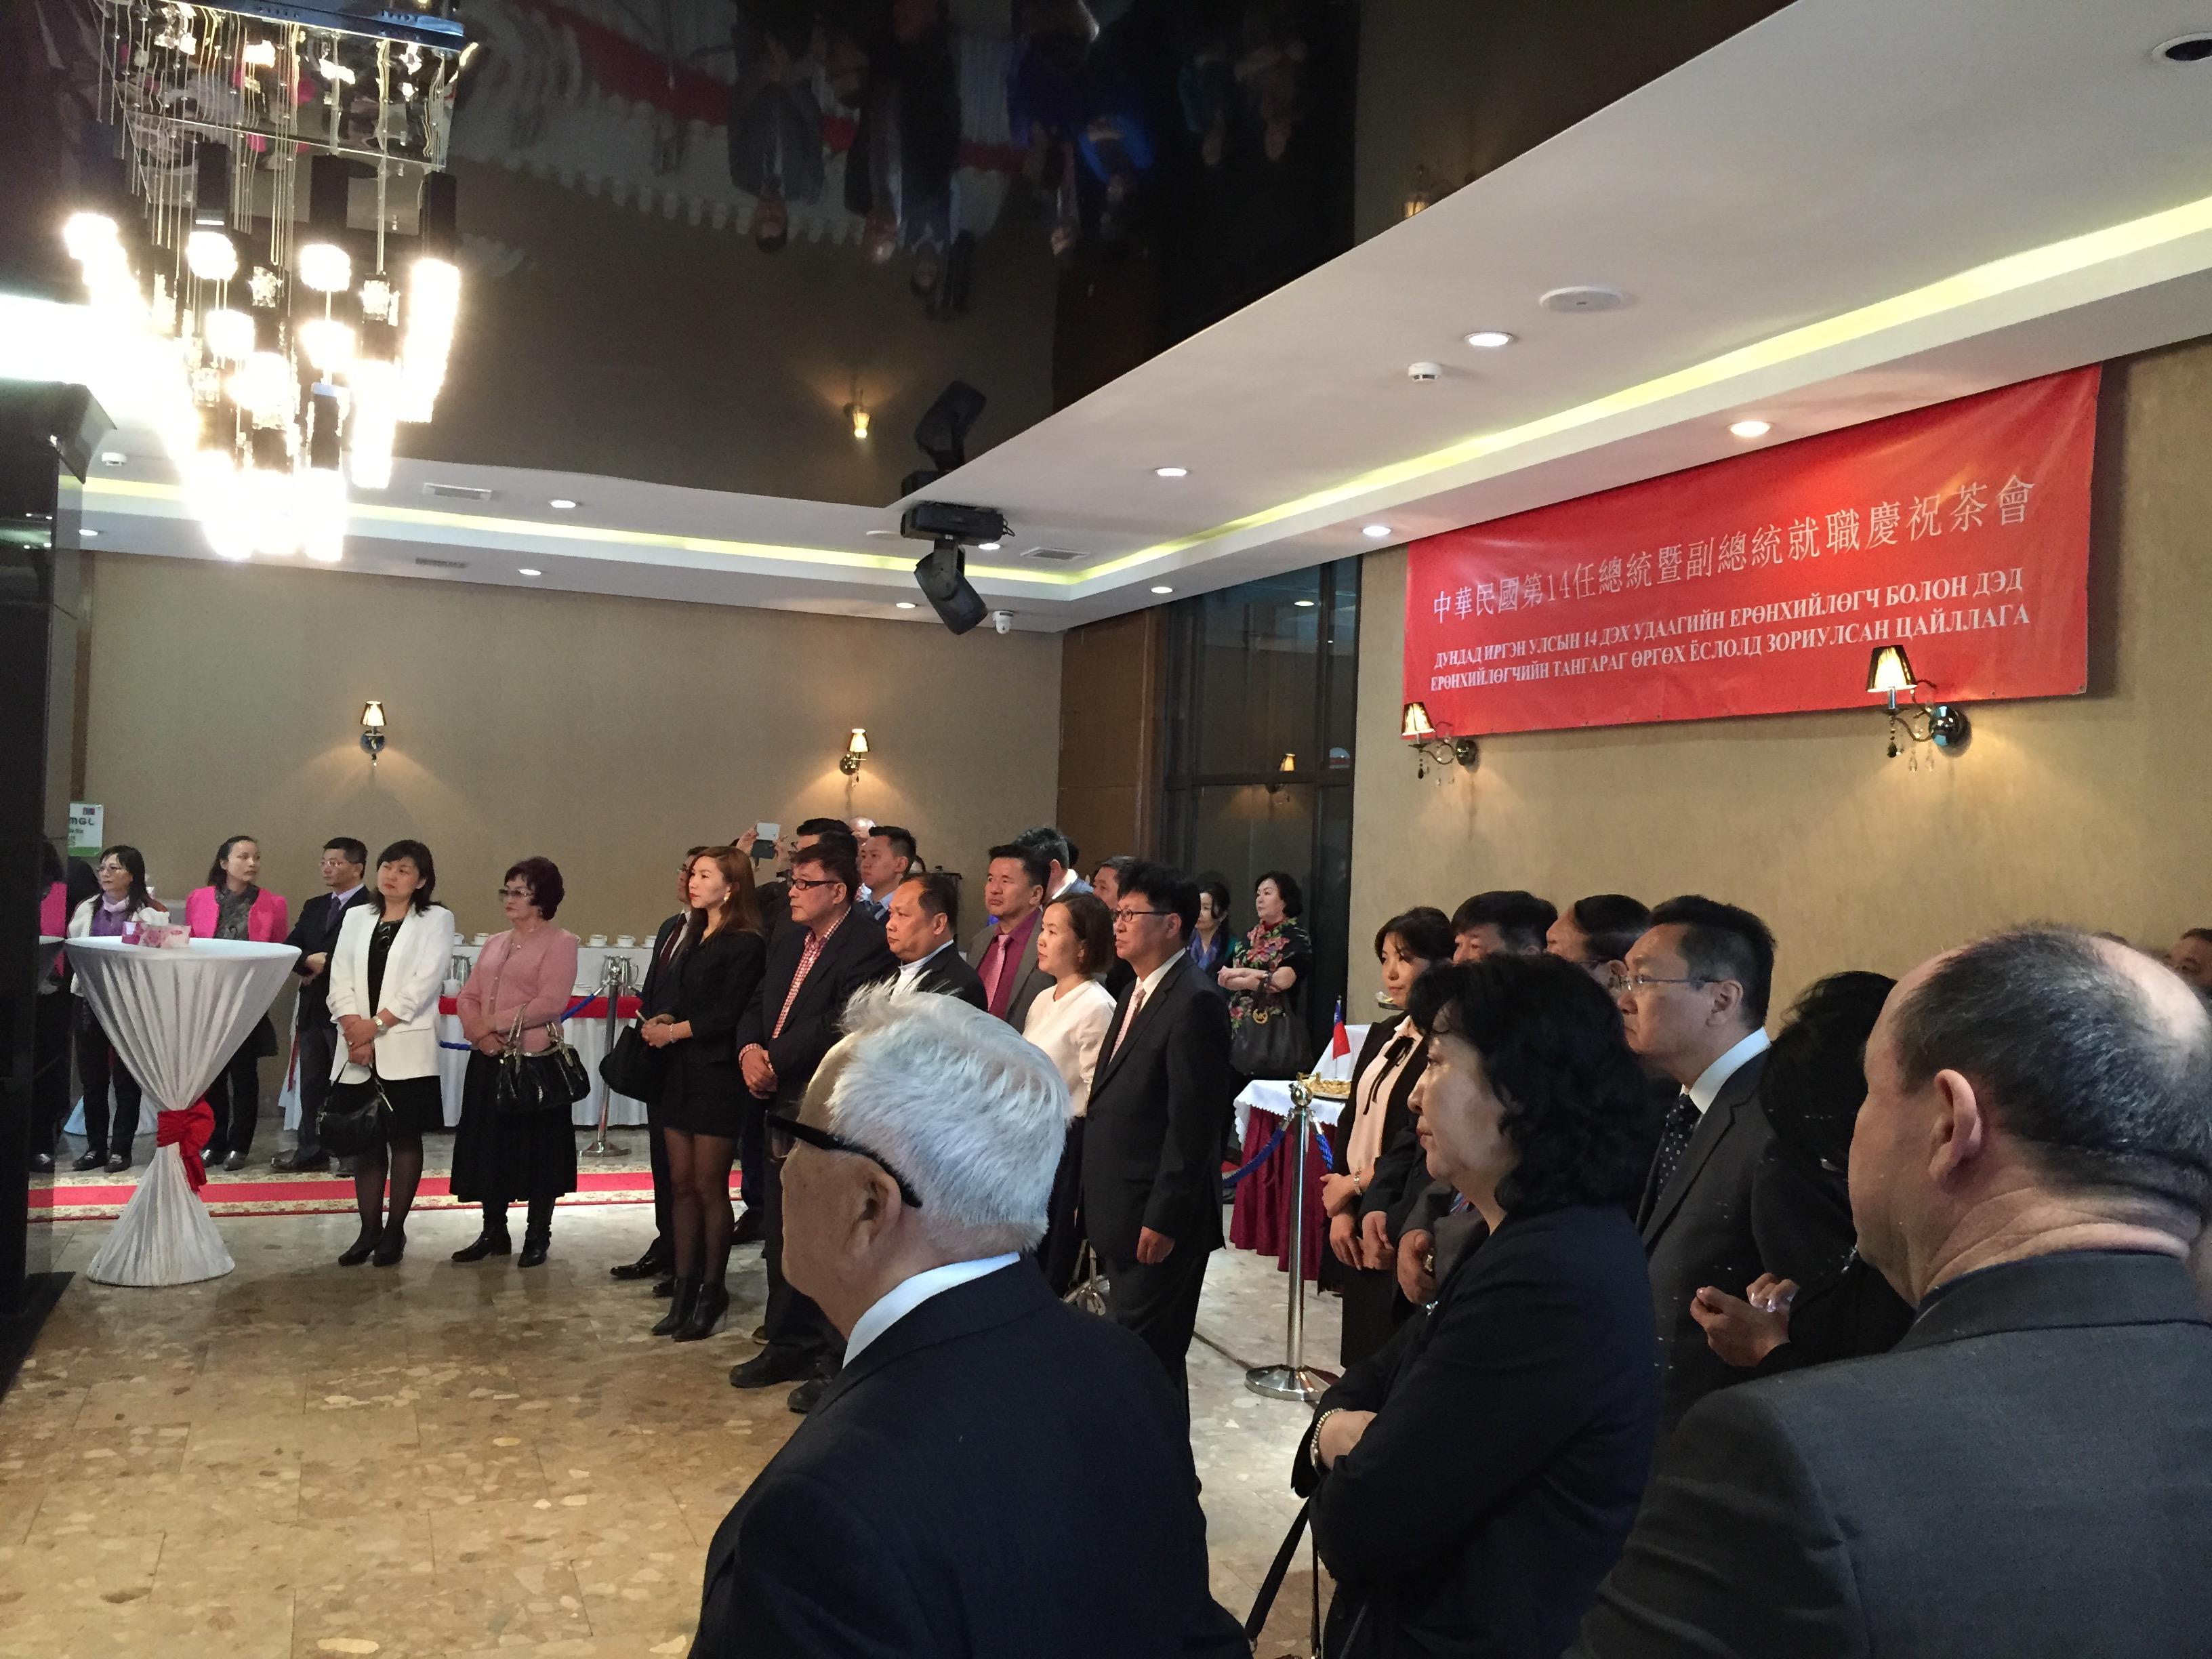 「中華民國第14任總統暨副總統就職慶祝茶會」出席來賓聆聽黃國榮代表致詞情形